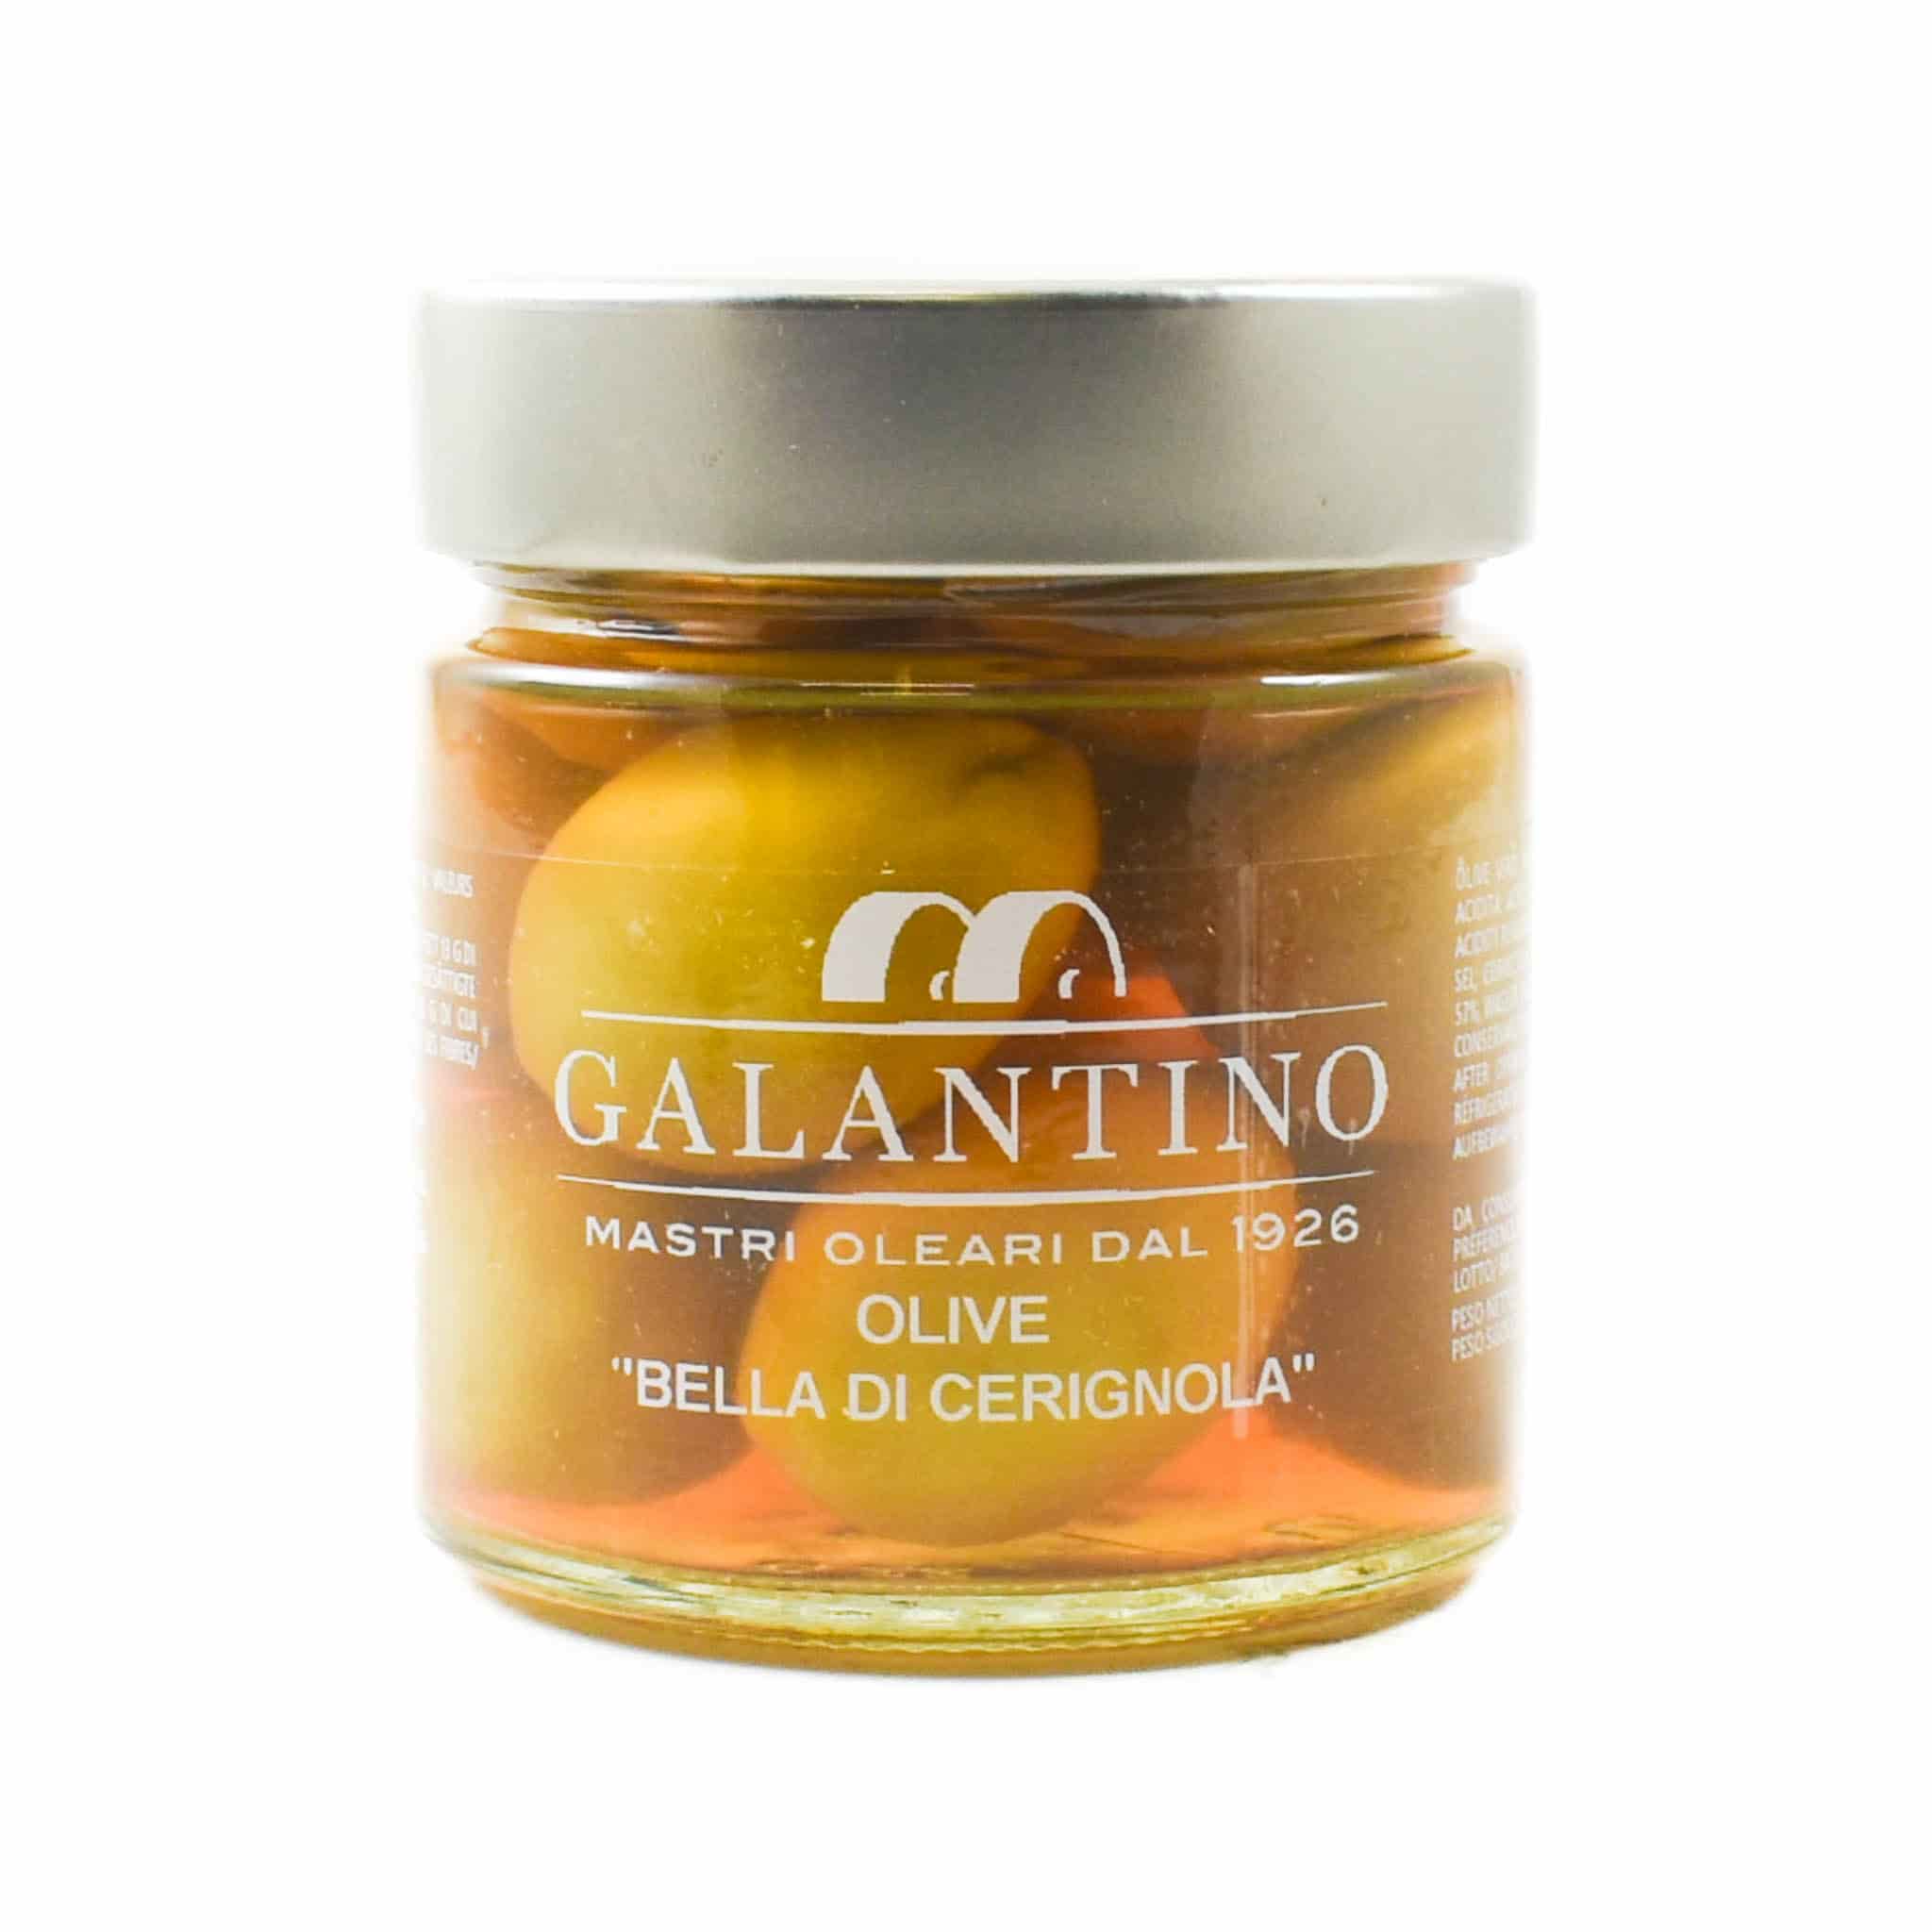 Galantino Green Large Olives, 200g